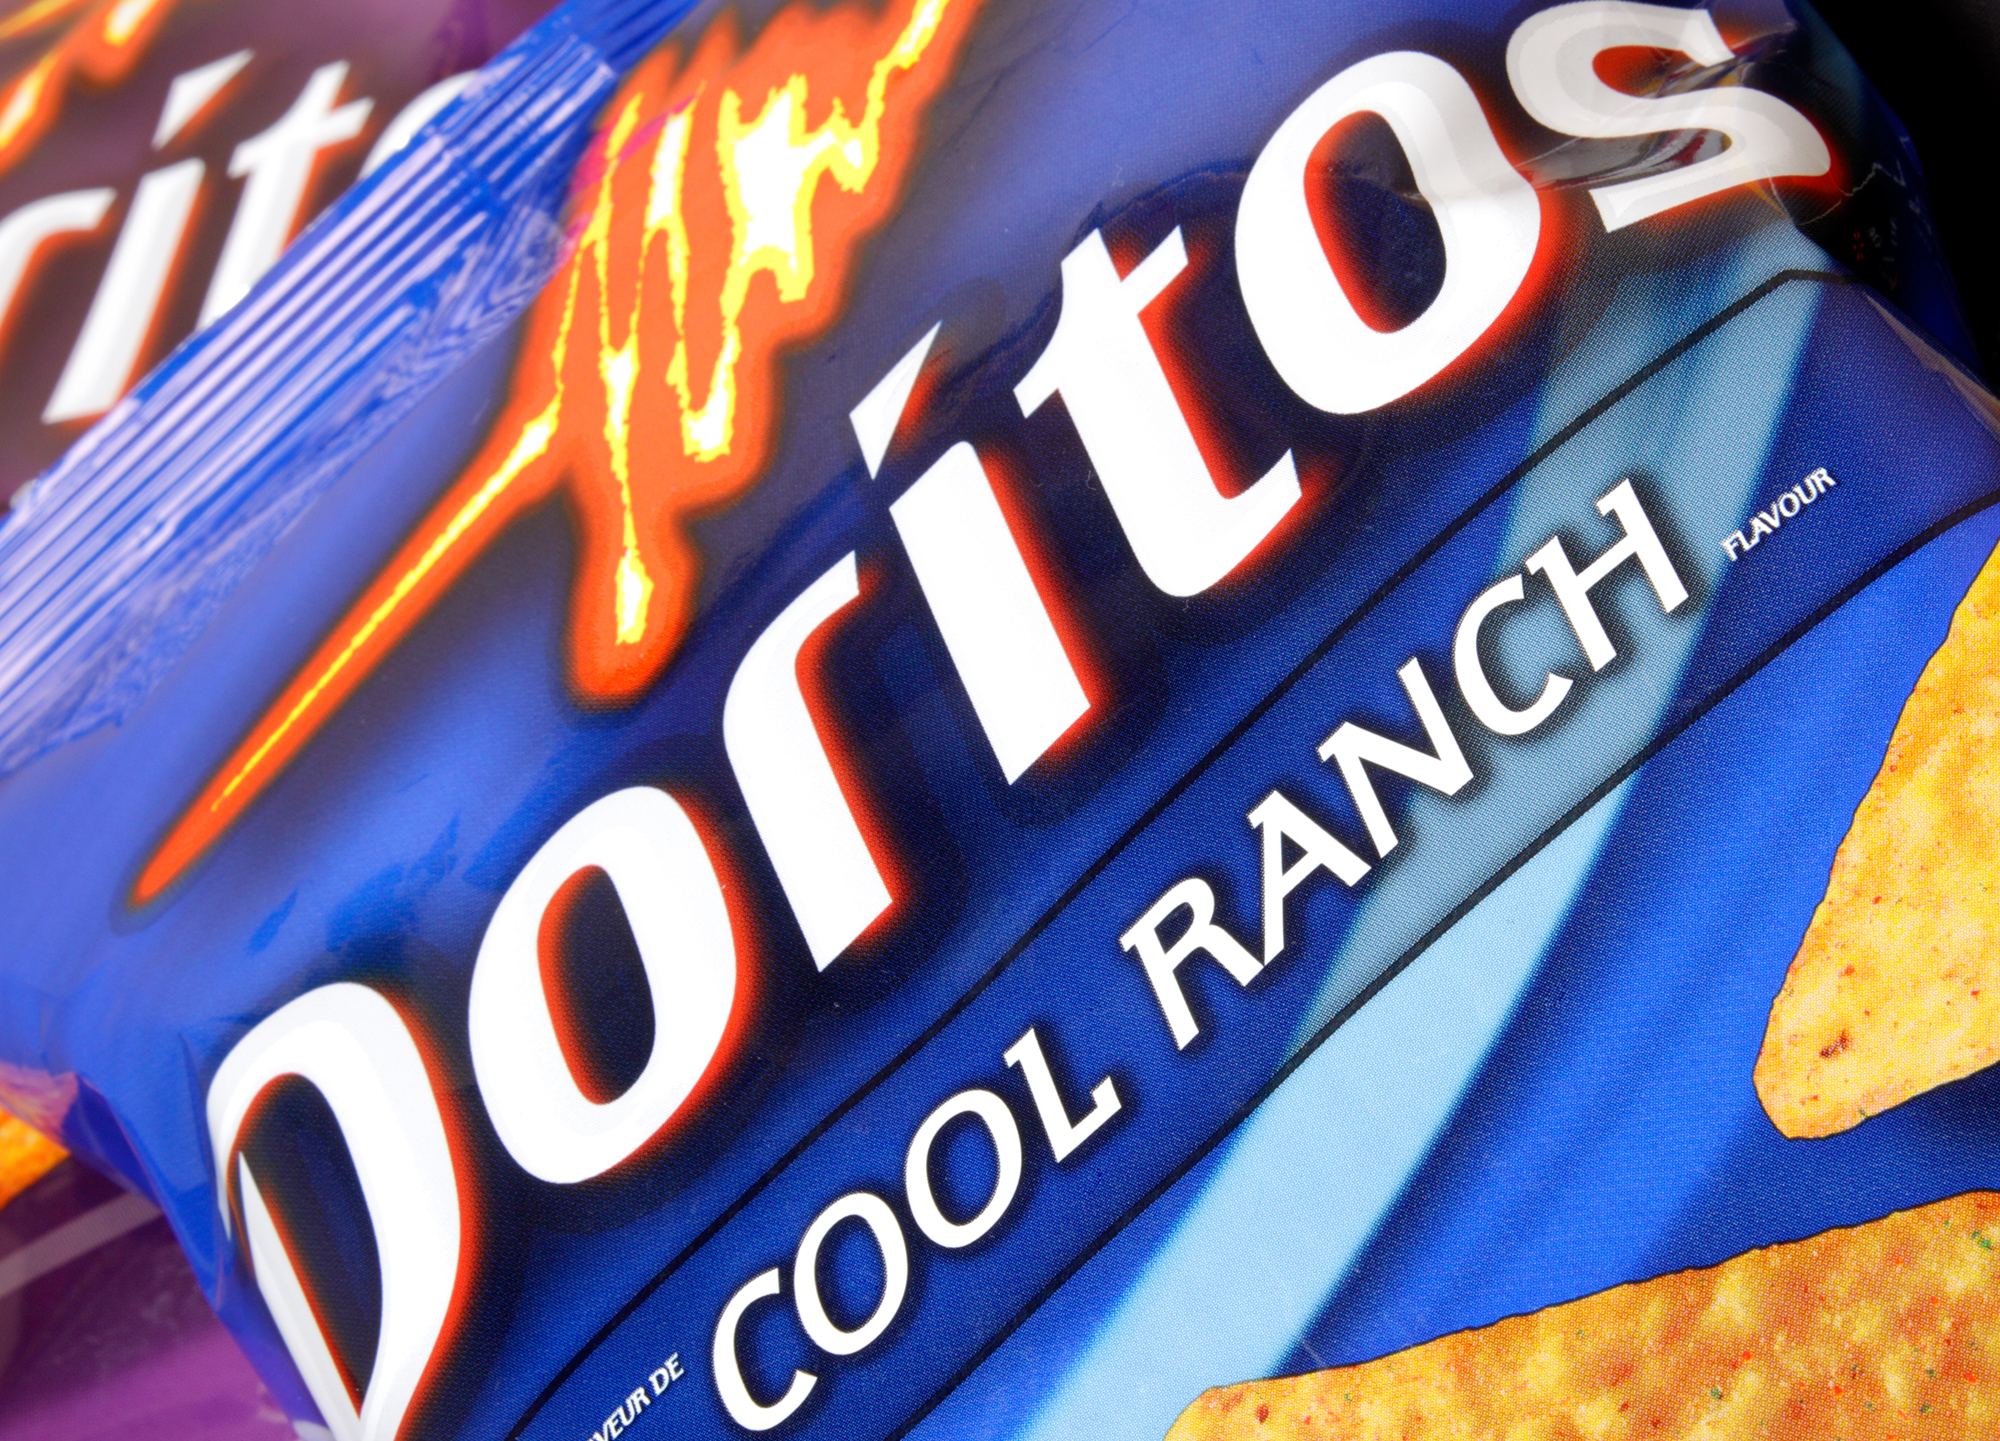 Doritos Cool Ranch